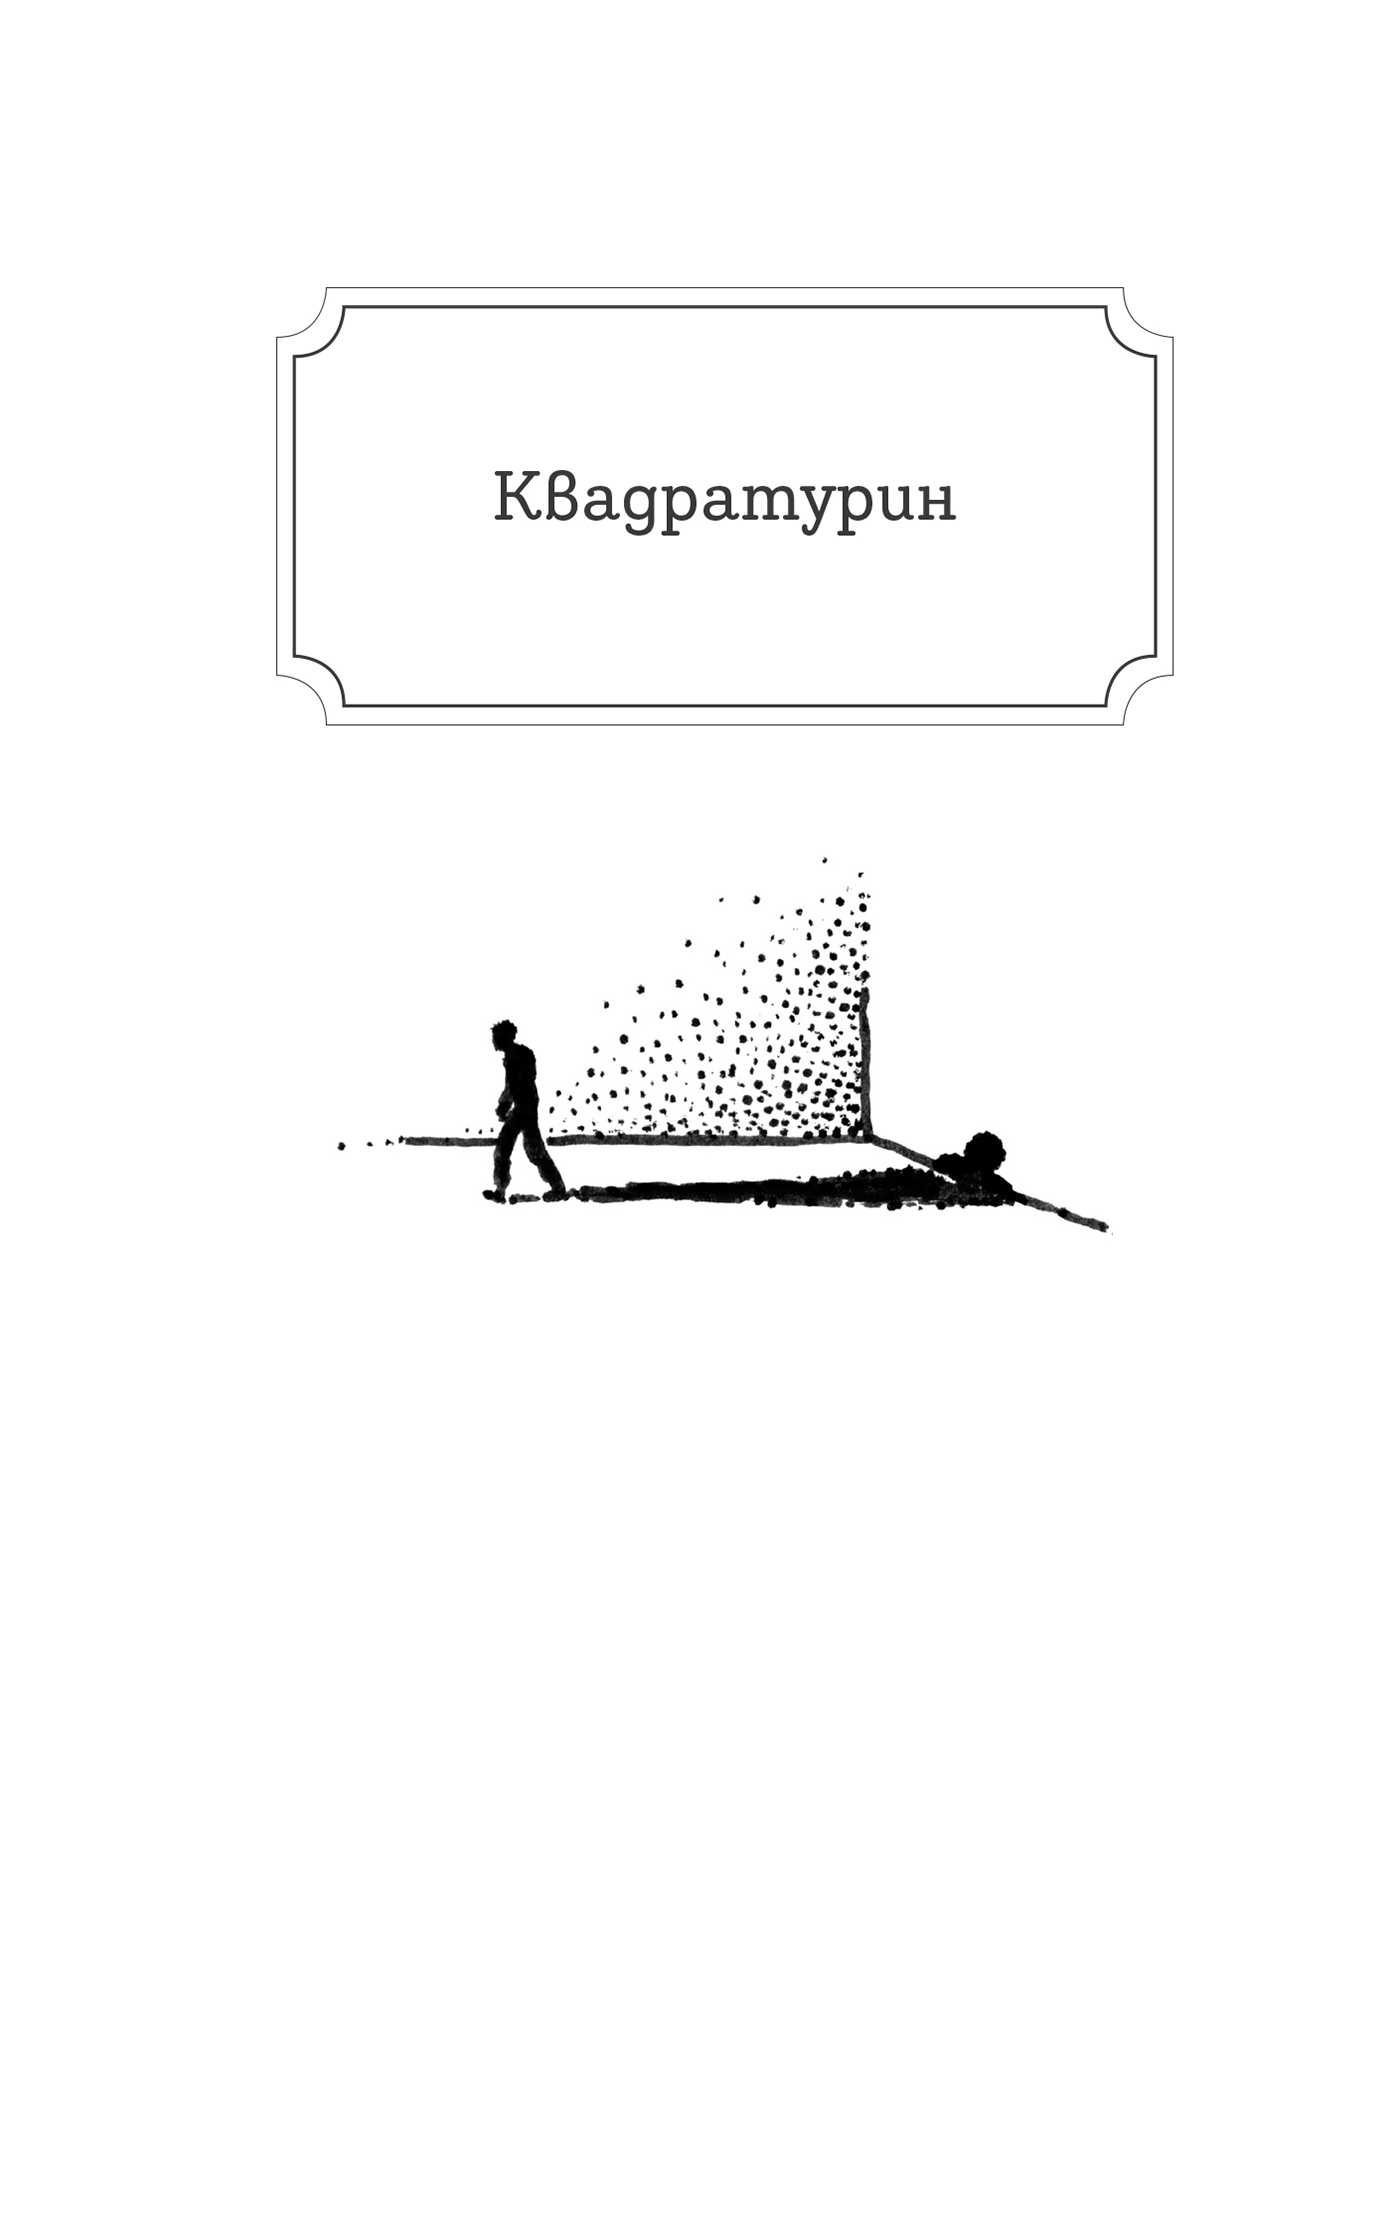 kiril Zlatkov book design typography   ILLUSTRATION  Krzhizhanovsky